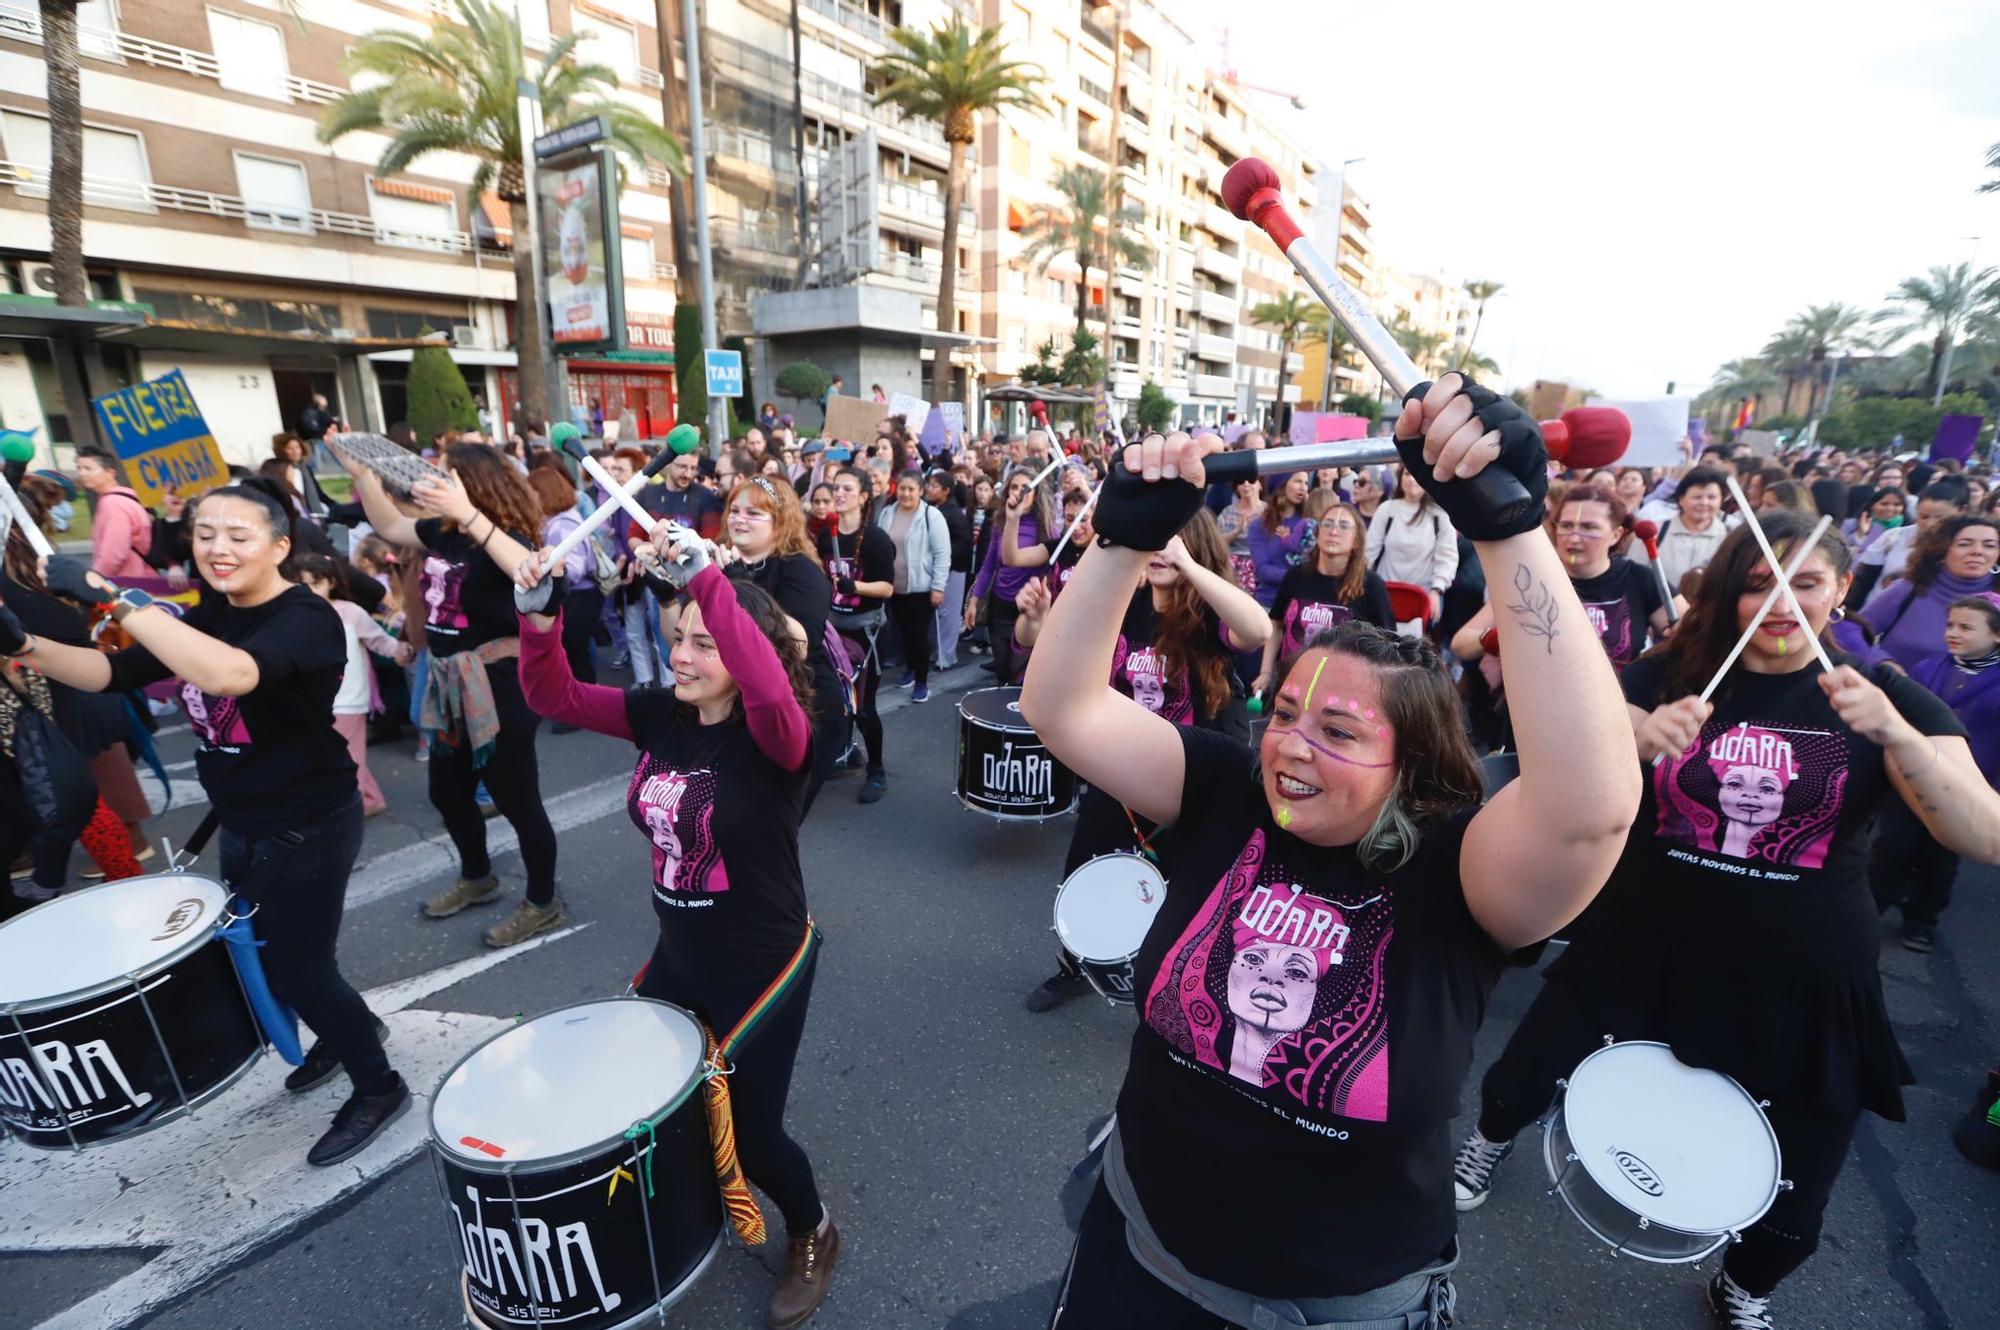 La manifestación del 8M recorre las calles de Córdoba